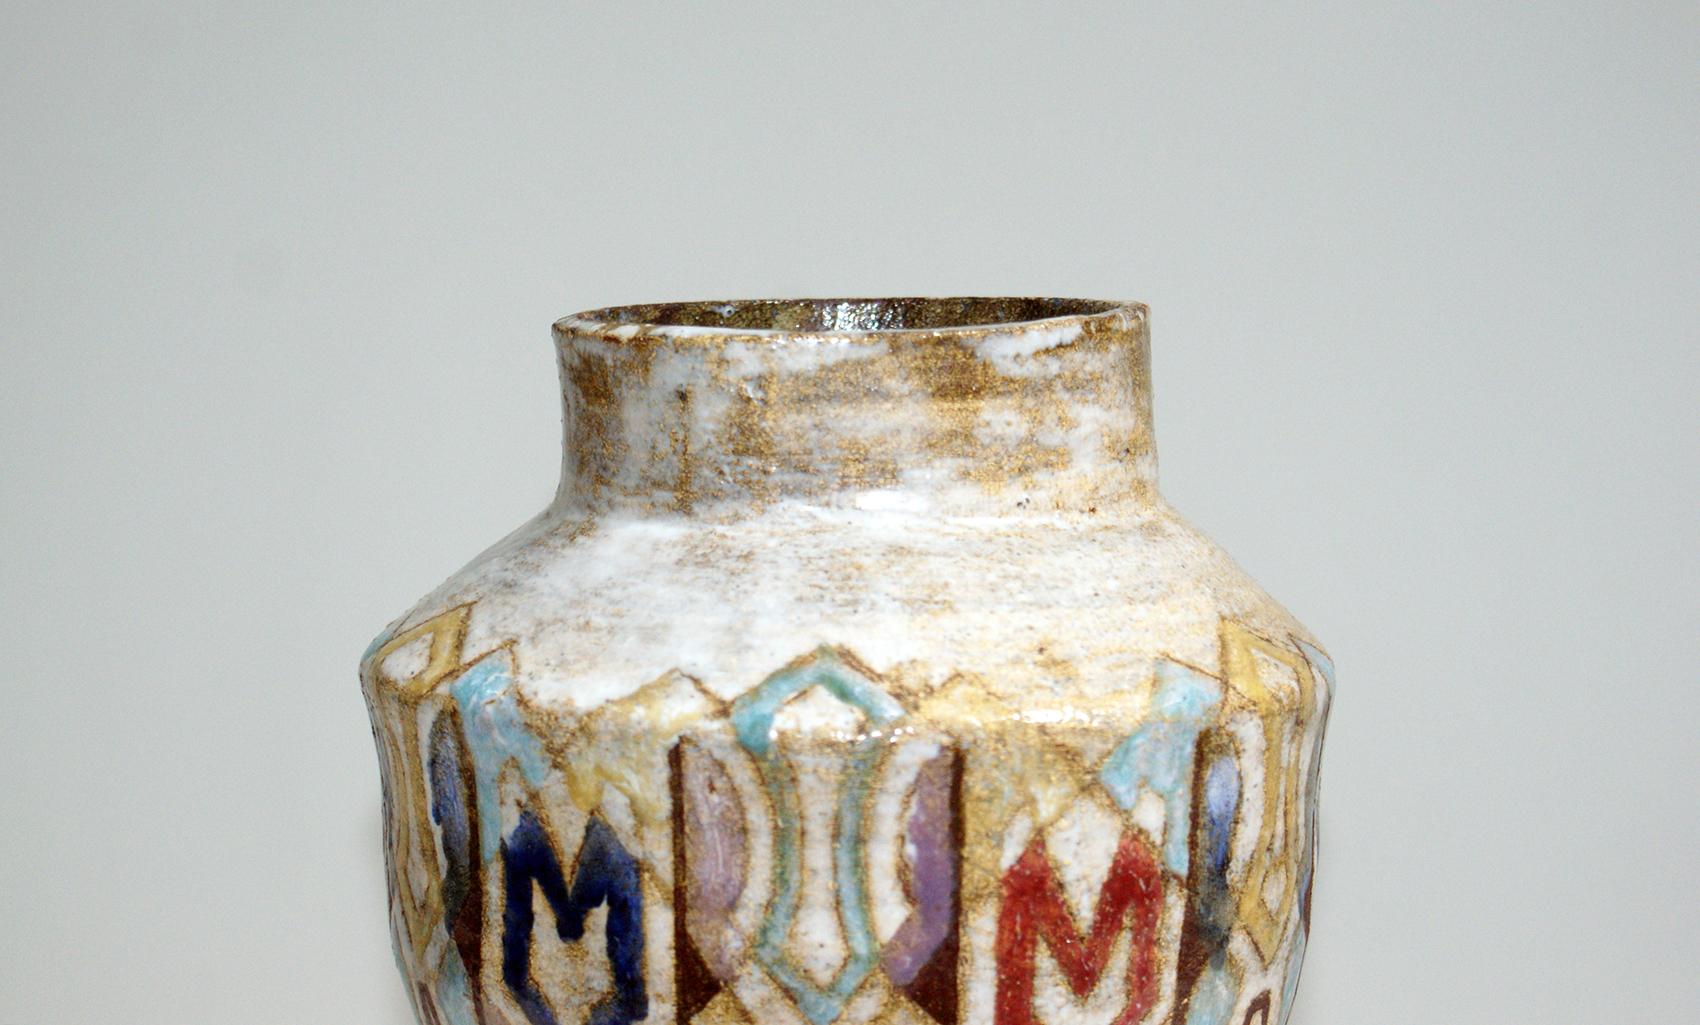 Art Deco Beautiful Colored Ceramic Vase Signed “Vallauris”, circa 1950s